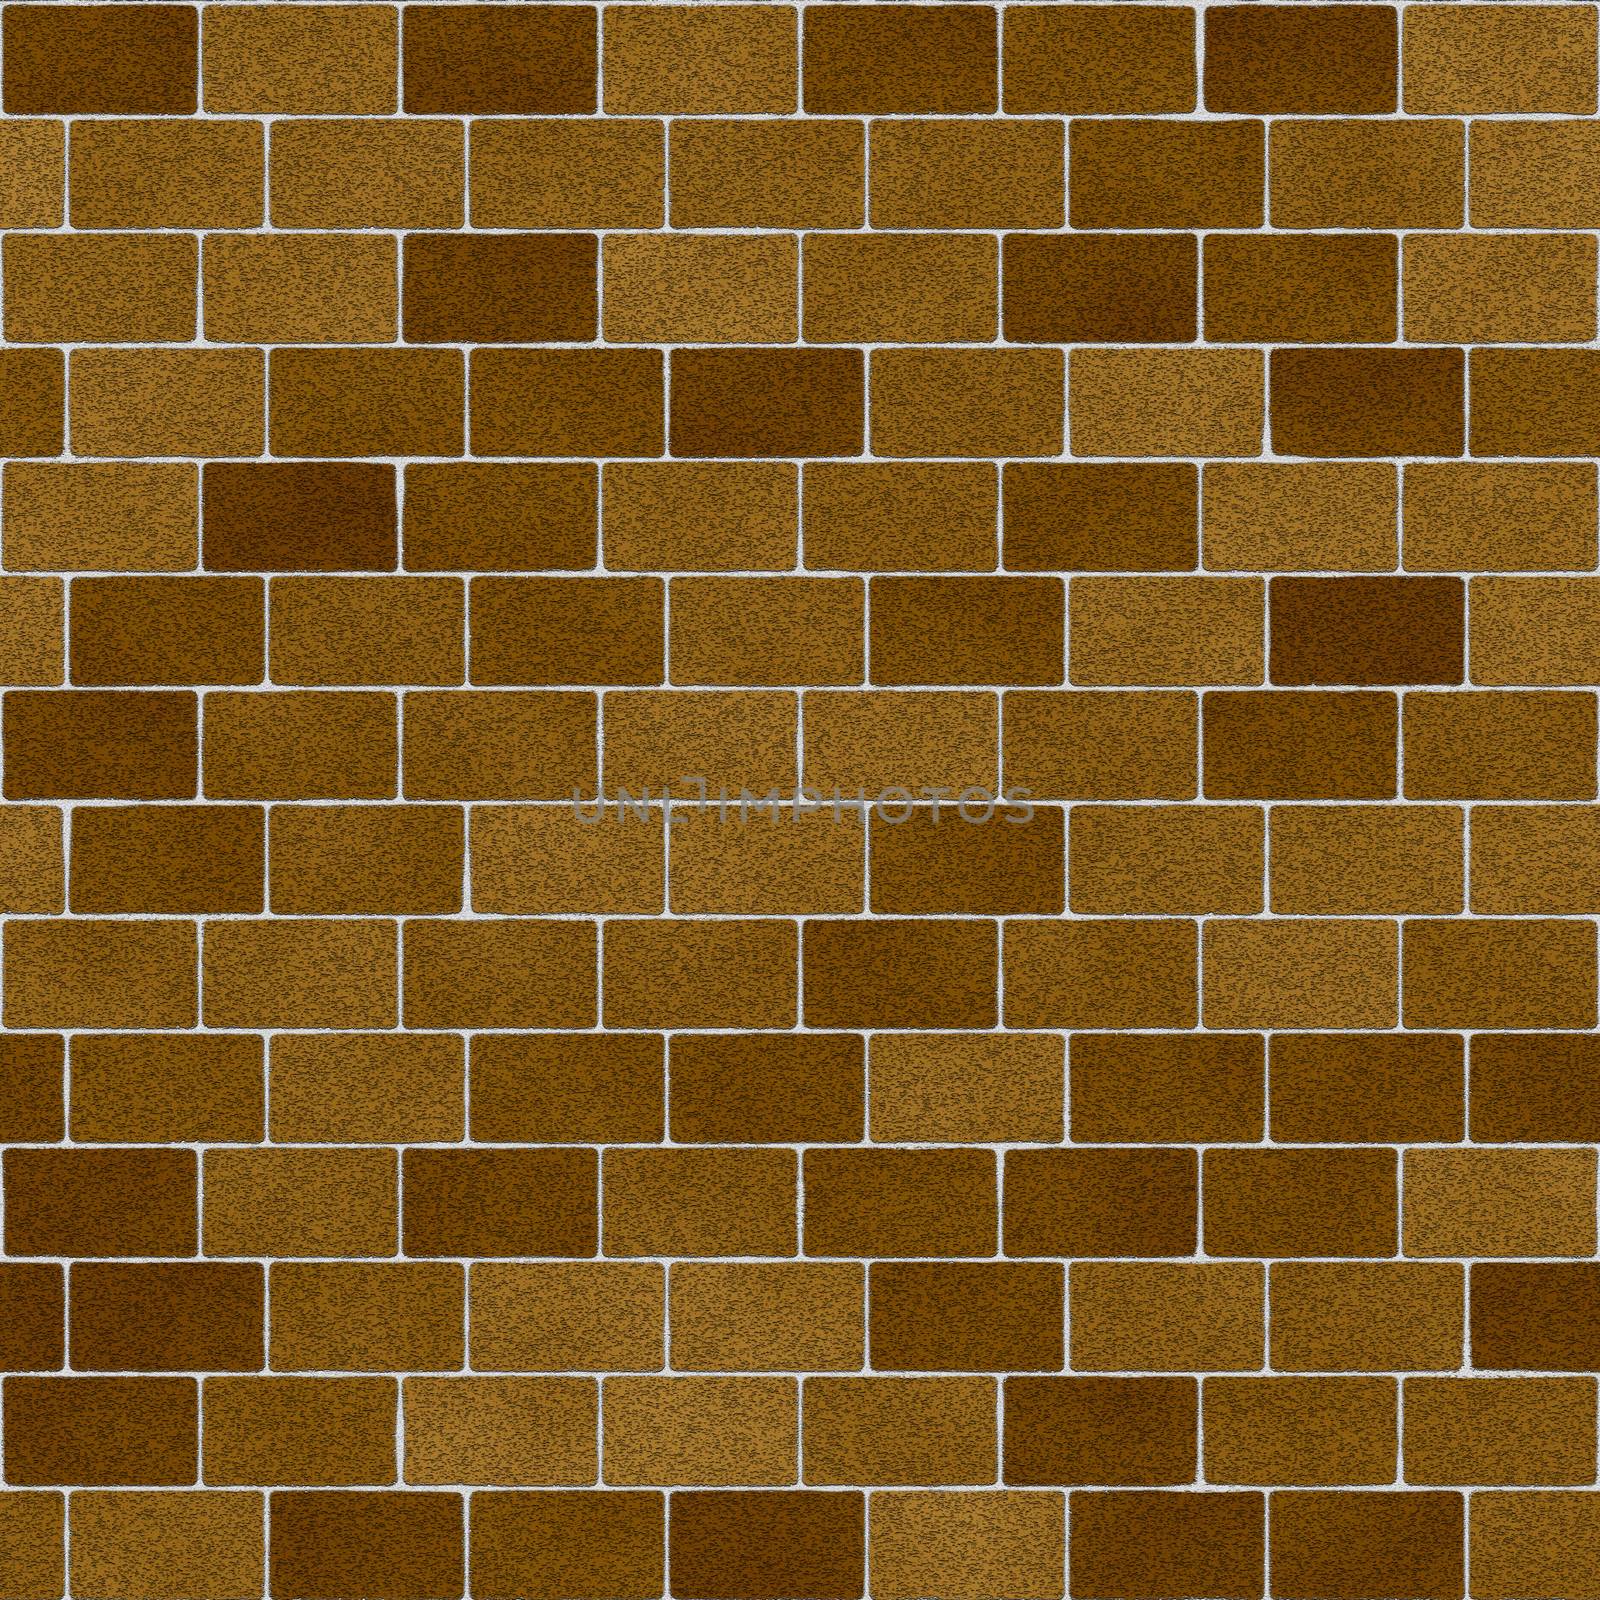 Khaki Brown Clay Bricks Seamless Texture by whitechild